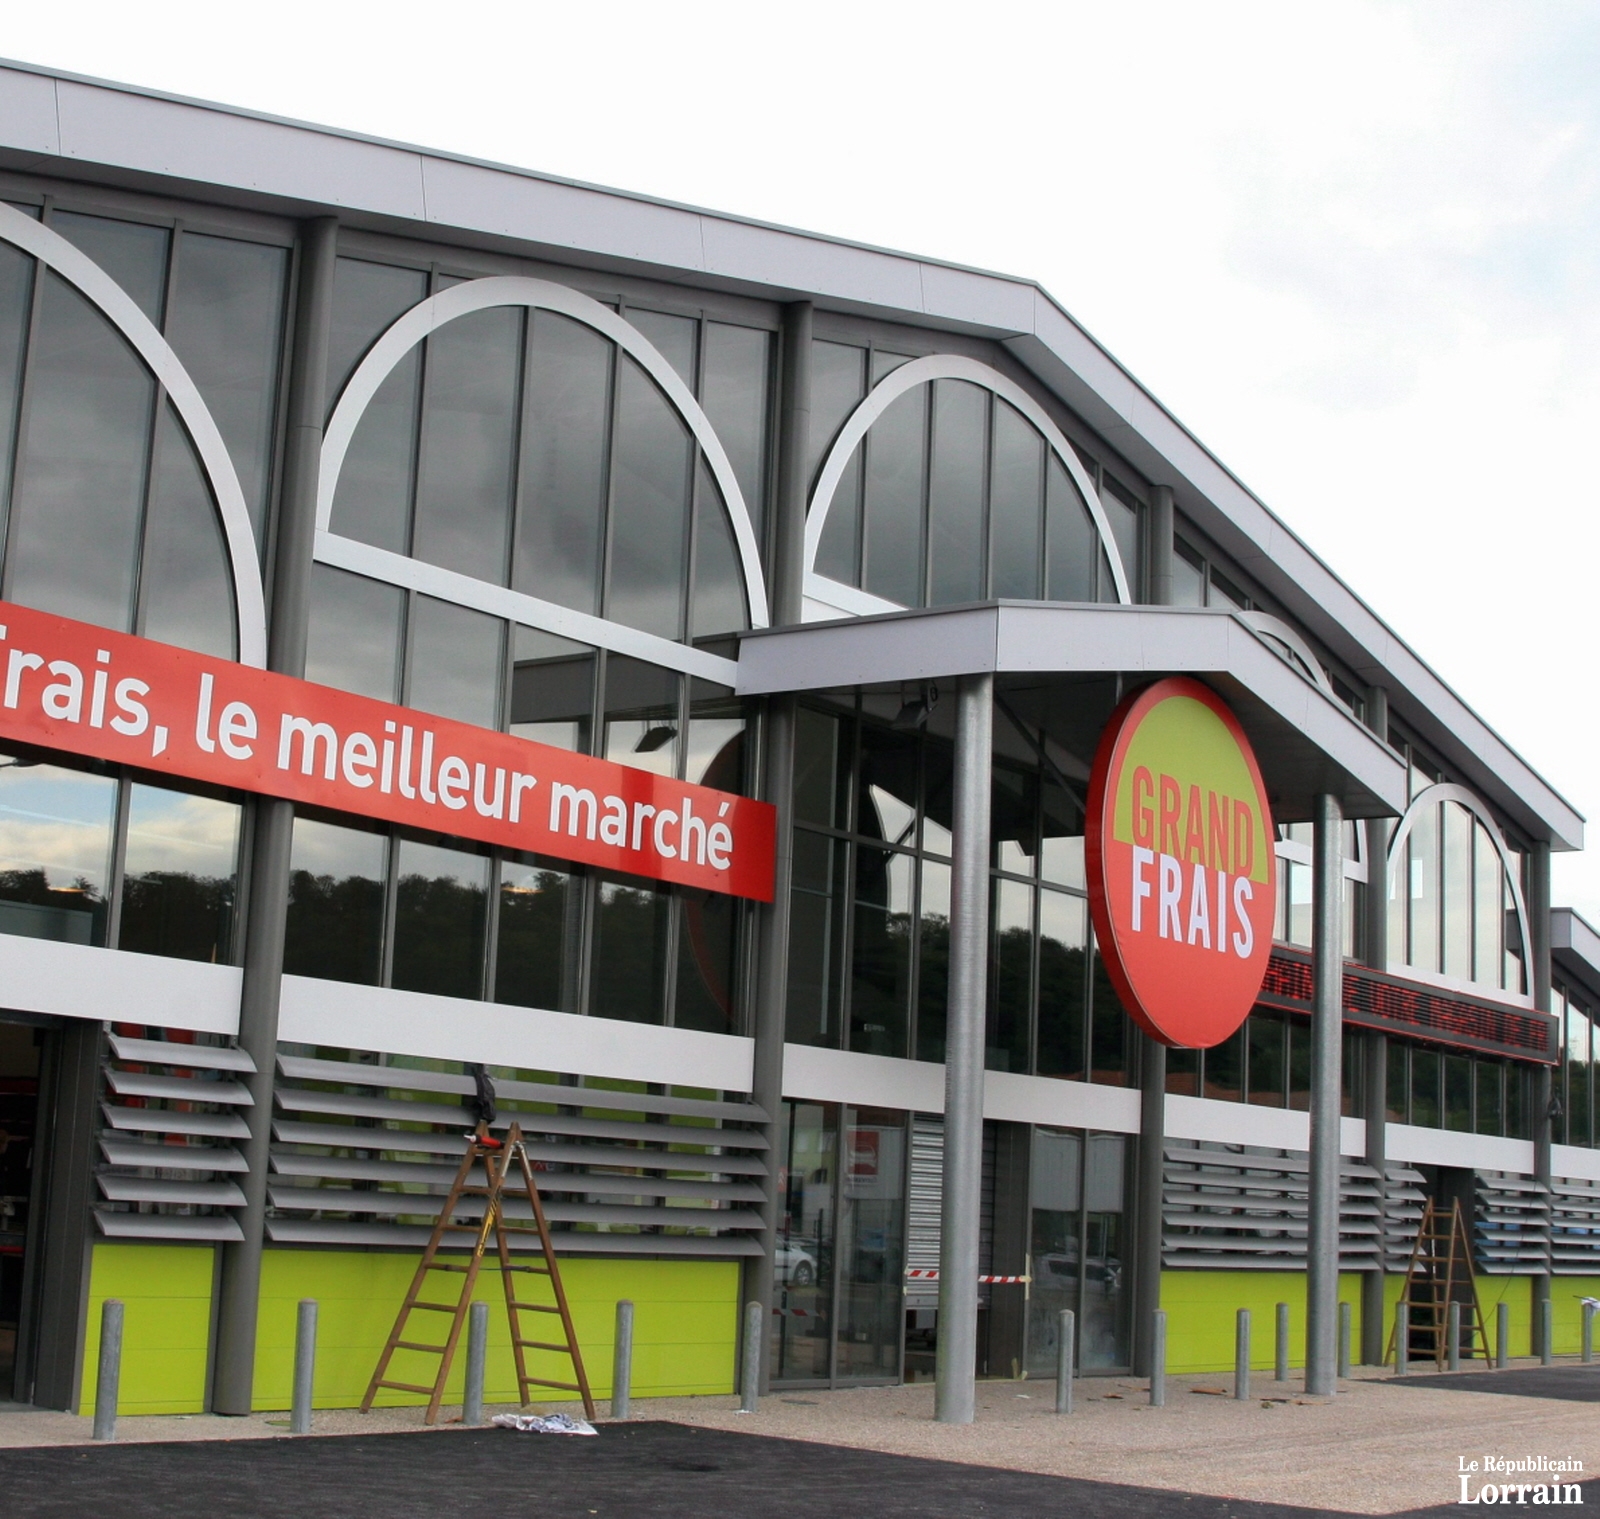 la-societe-francaise-grand-frais-compte-170-magasins-dont-un-a-messancy-en-belgique-a-15-km-de-lexy-photo-rene-bych-1516387009.jpg